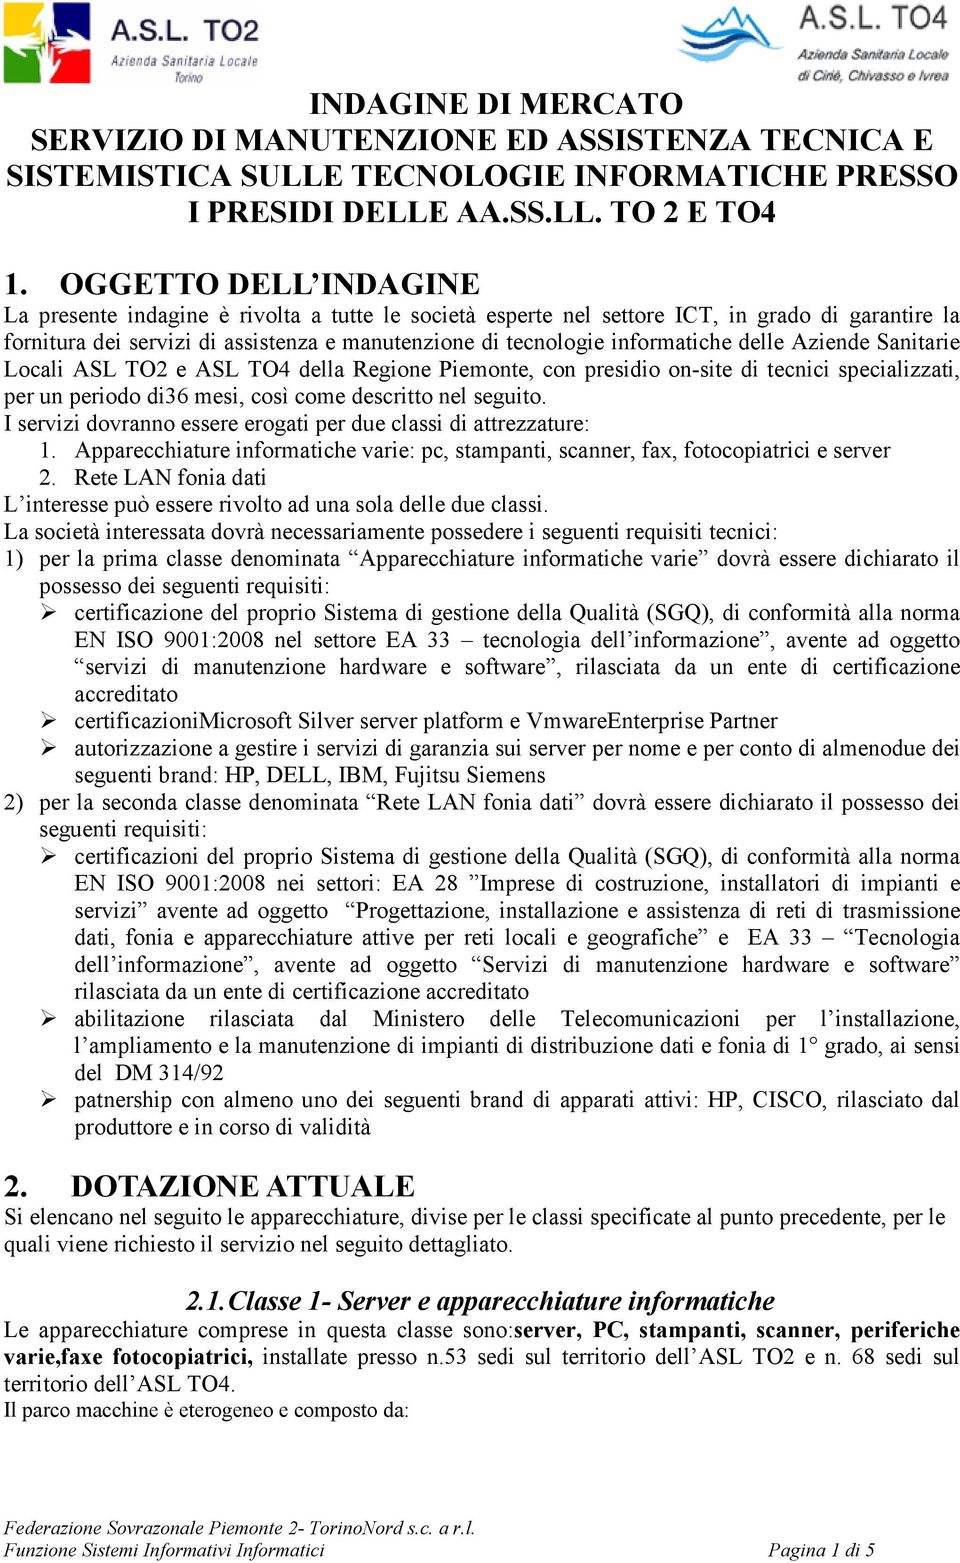 delle Aziende Sanitarie Locali ASL TO2 e ASL TO4 della Regione Piemonte, con presidio on-site di tecnici specializzati, per un periodo di36 mesi, così come descritto nel seguito.